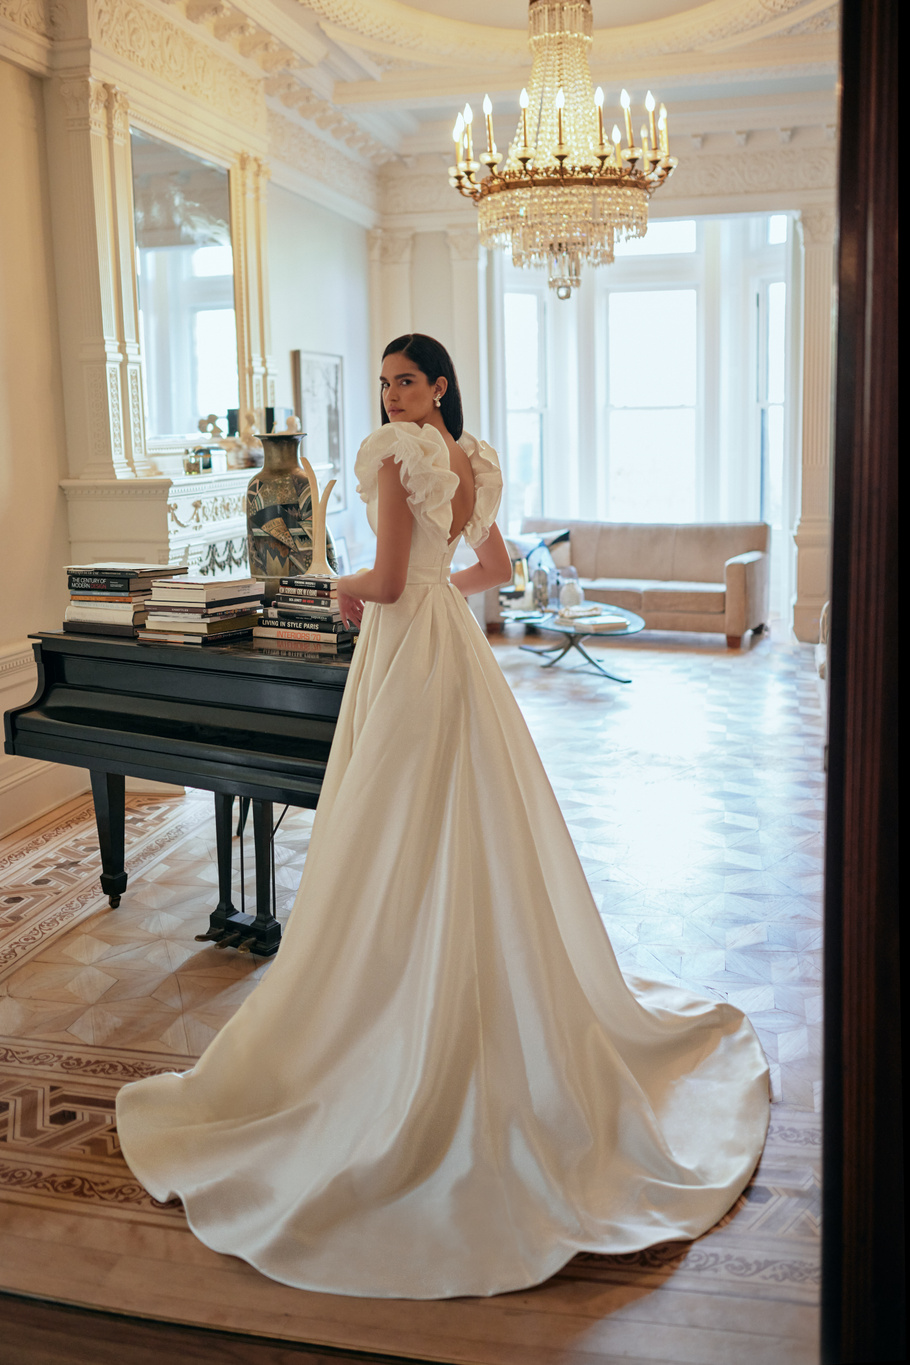 Купить свадебное платье «Беллини» Вона из коллекции Любовь в городе 2022 года в салоне «Мэри Трюфель»